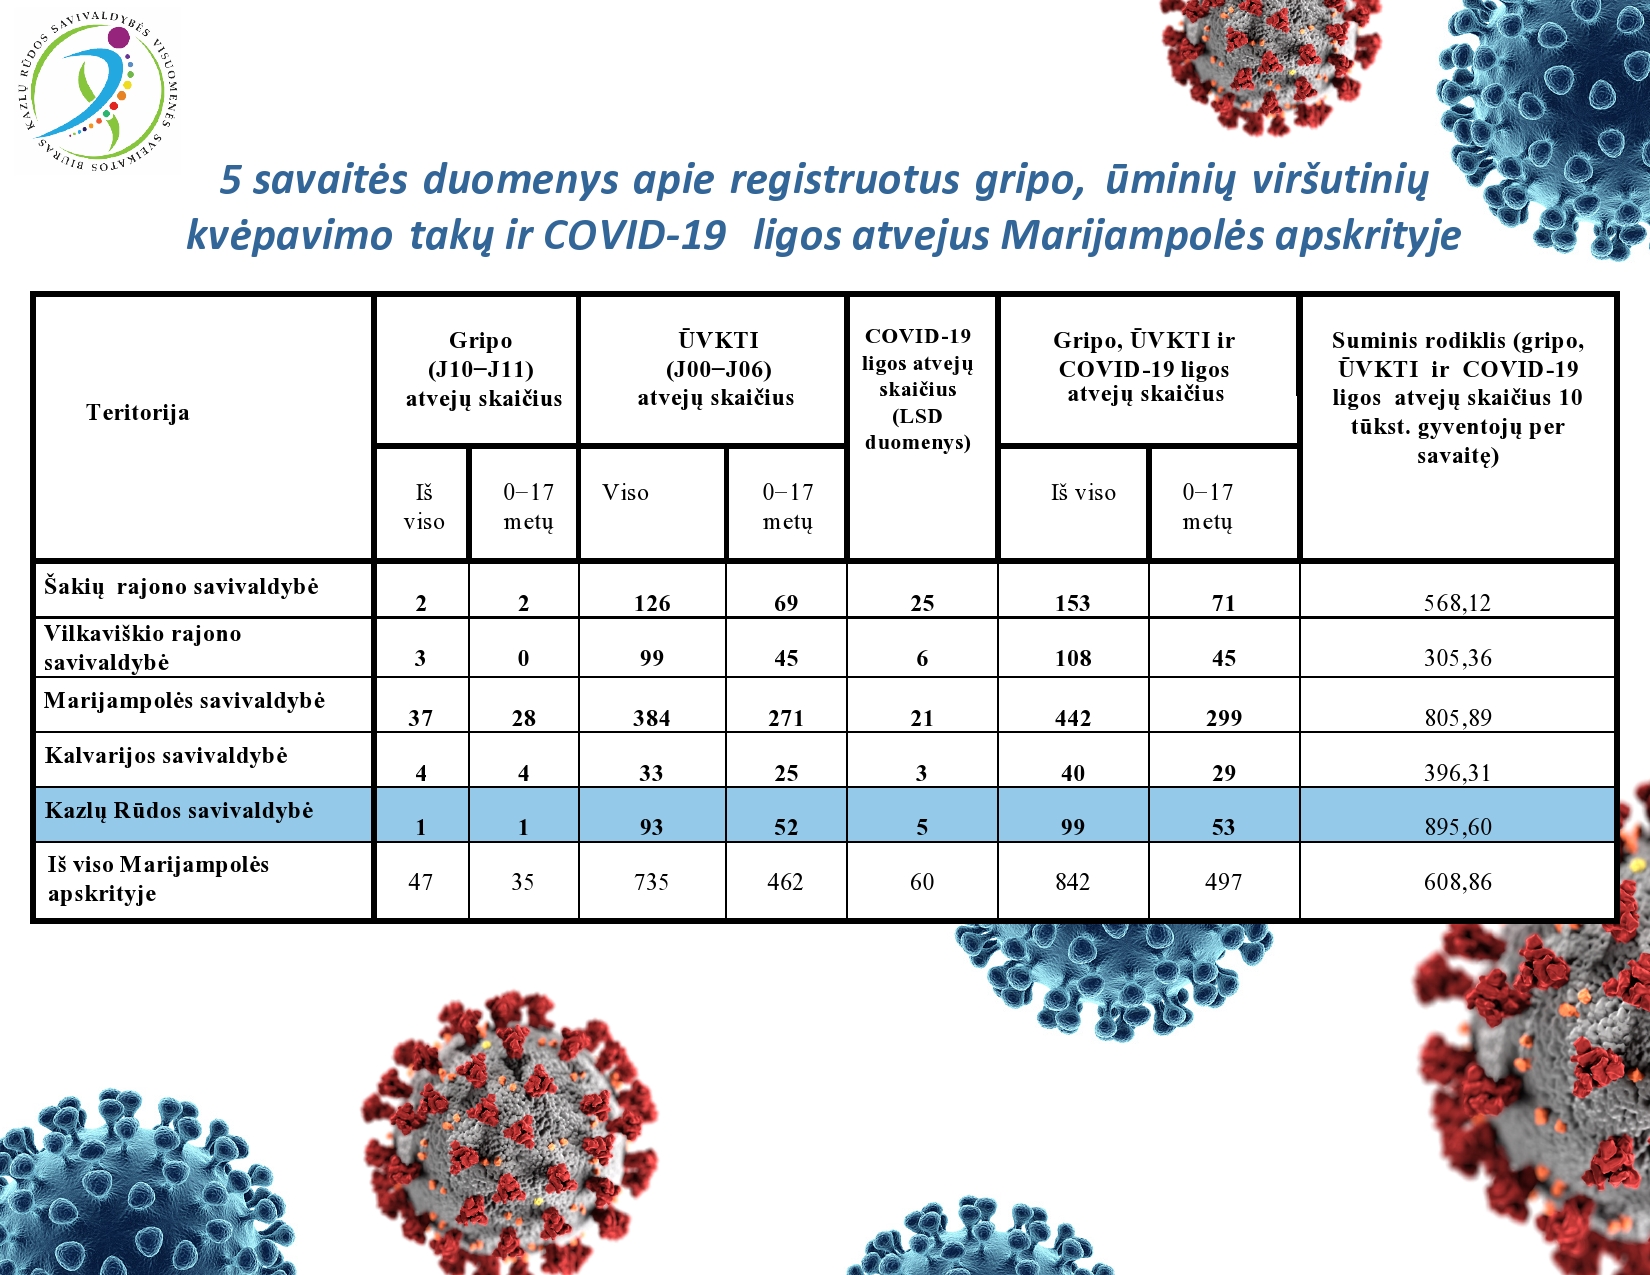 5-savaites-duomenys-apie-registruotus-gripo,-uminiu-virsutiniu-kvepavimo-taku-ir-covid-19-ligos-atvejus-marijampoles-apskrityje-